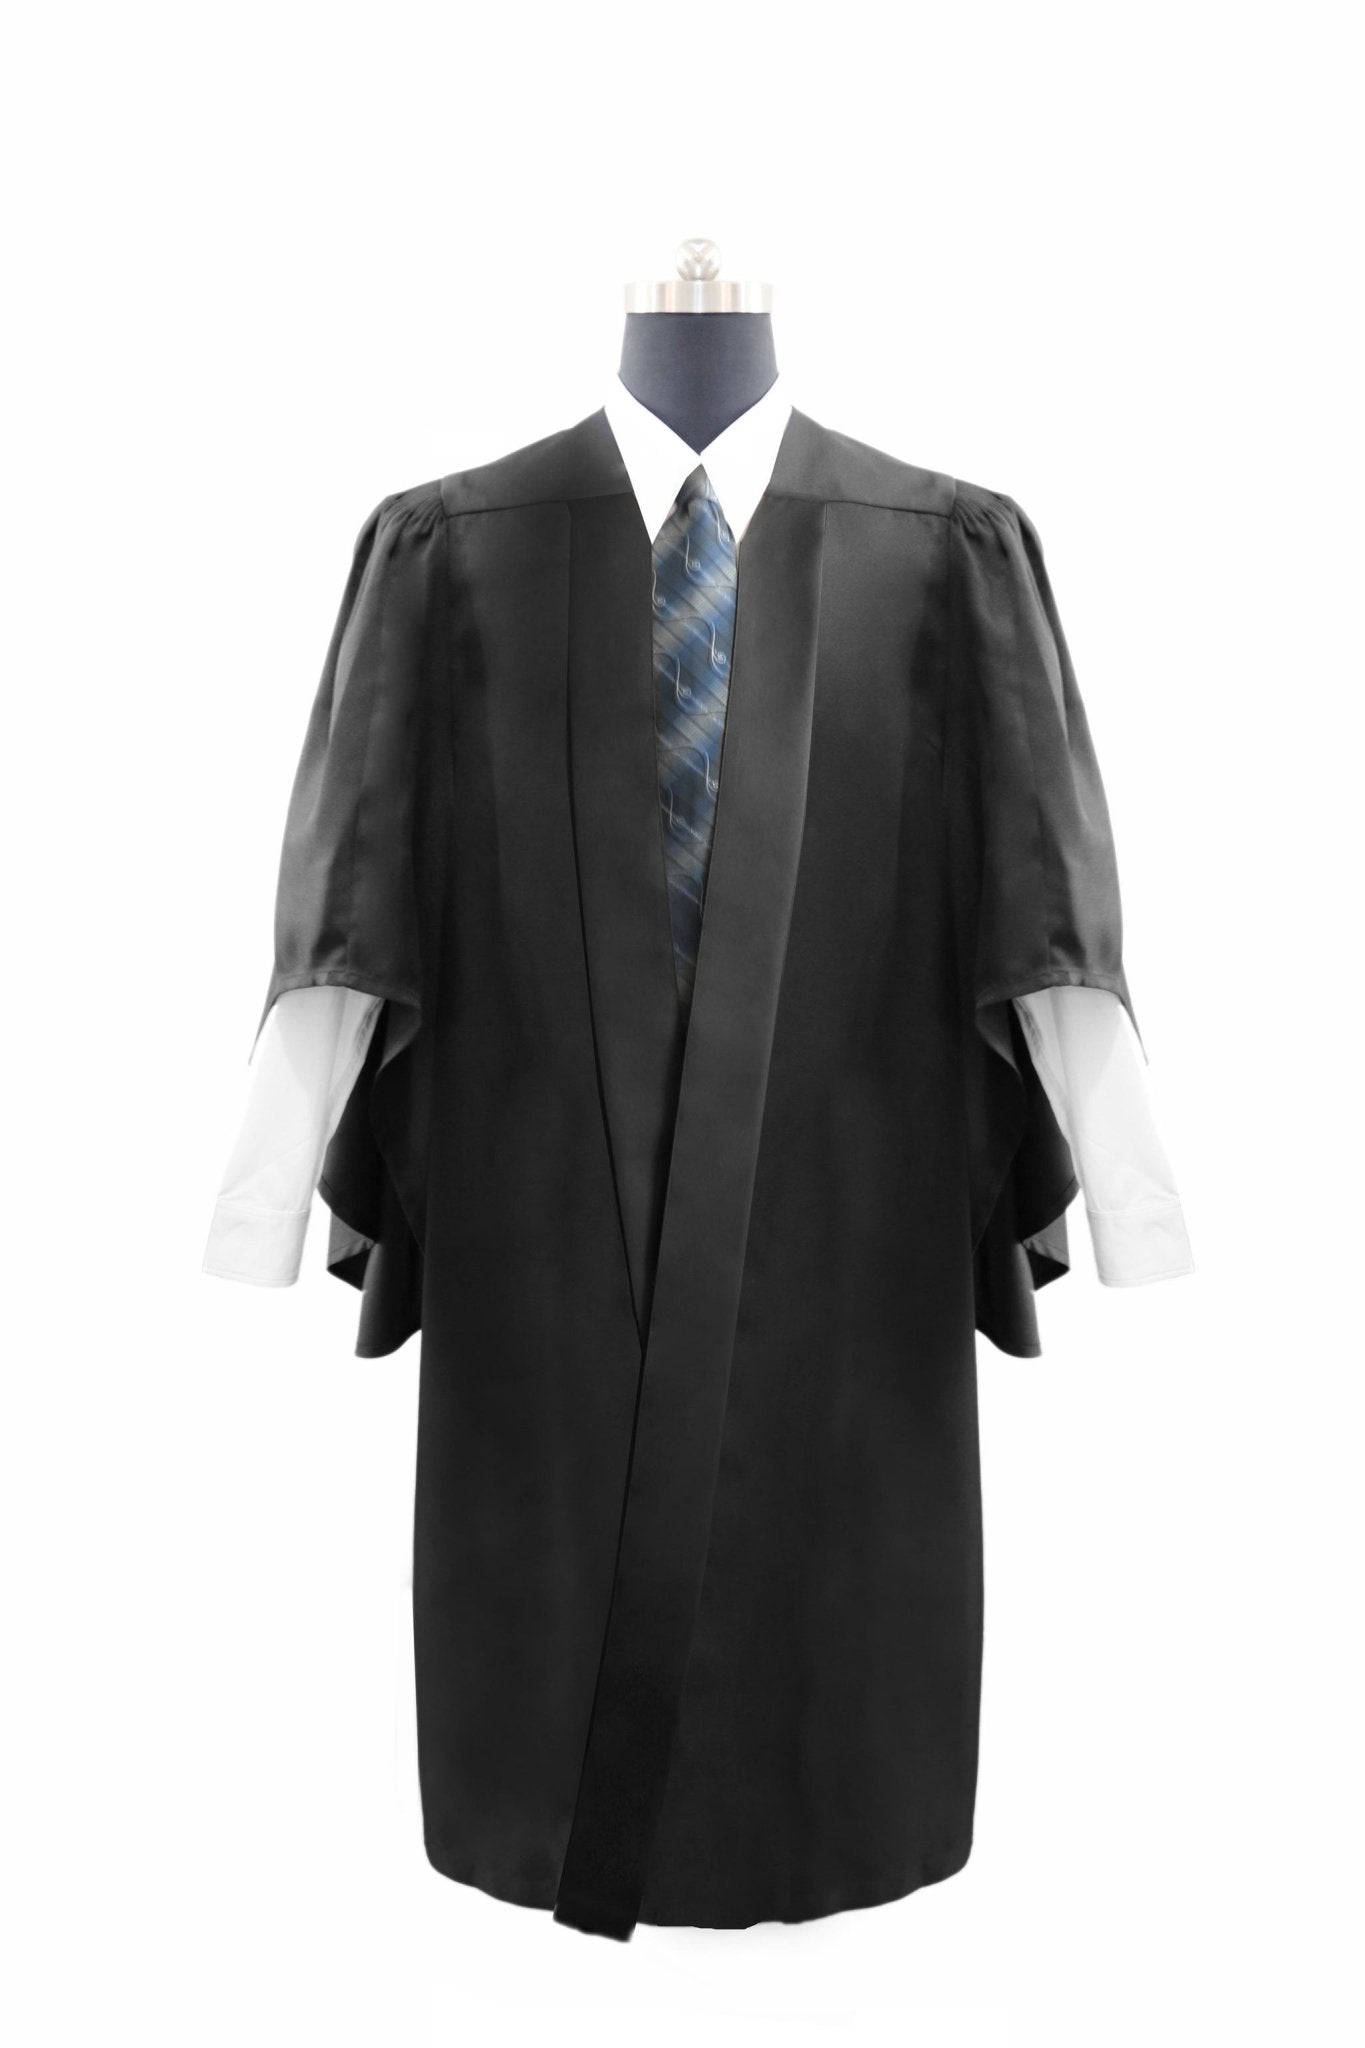 Deluxe Black Bachelors Graduation Gown - UK University Gown - Graduation Gowns UK